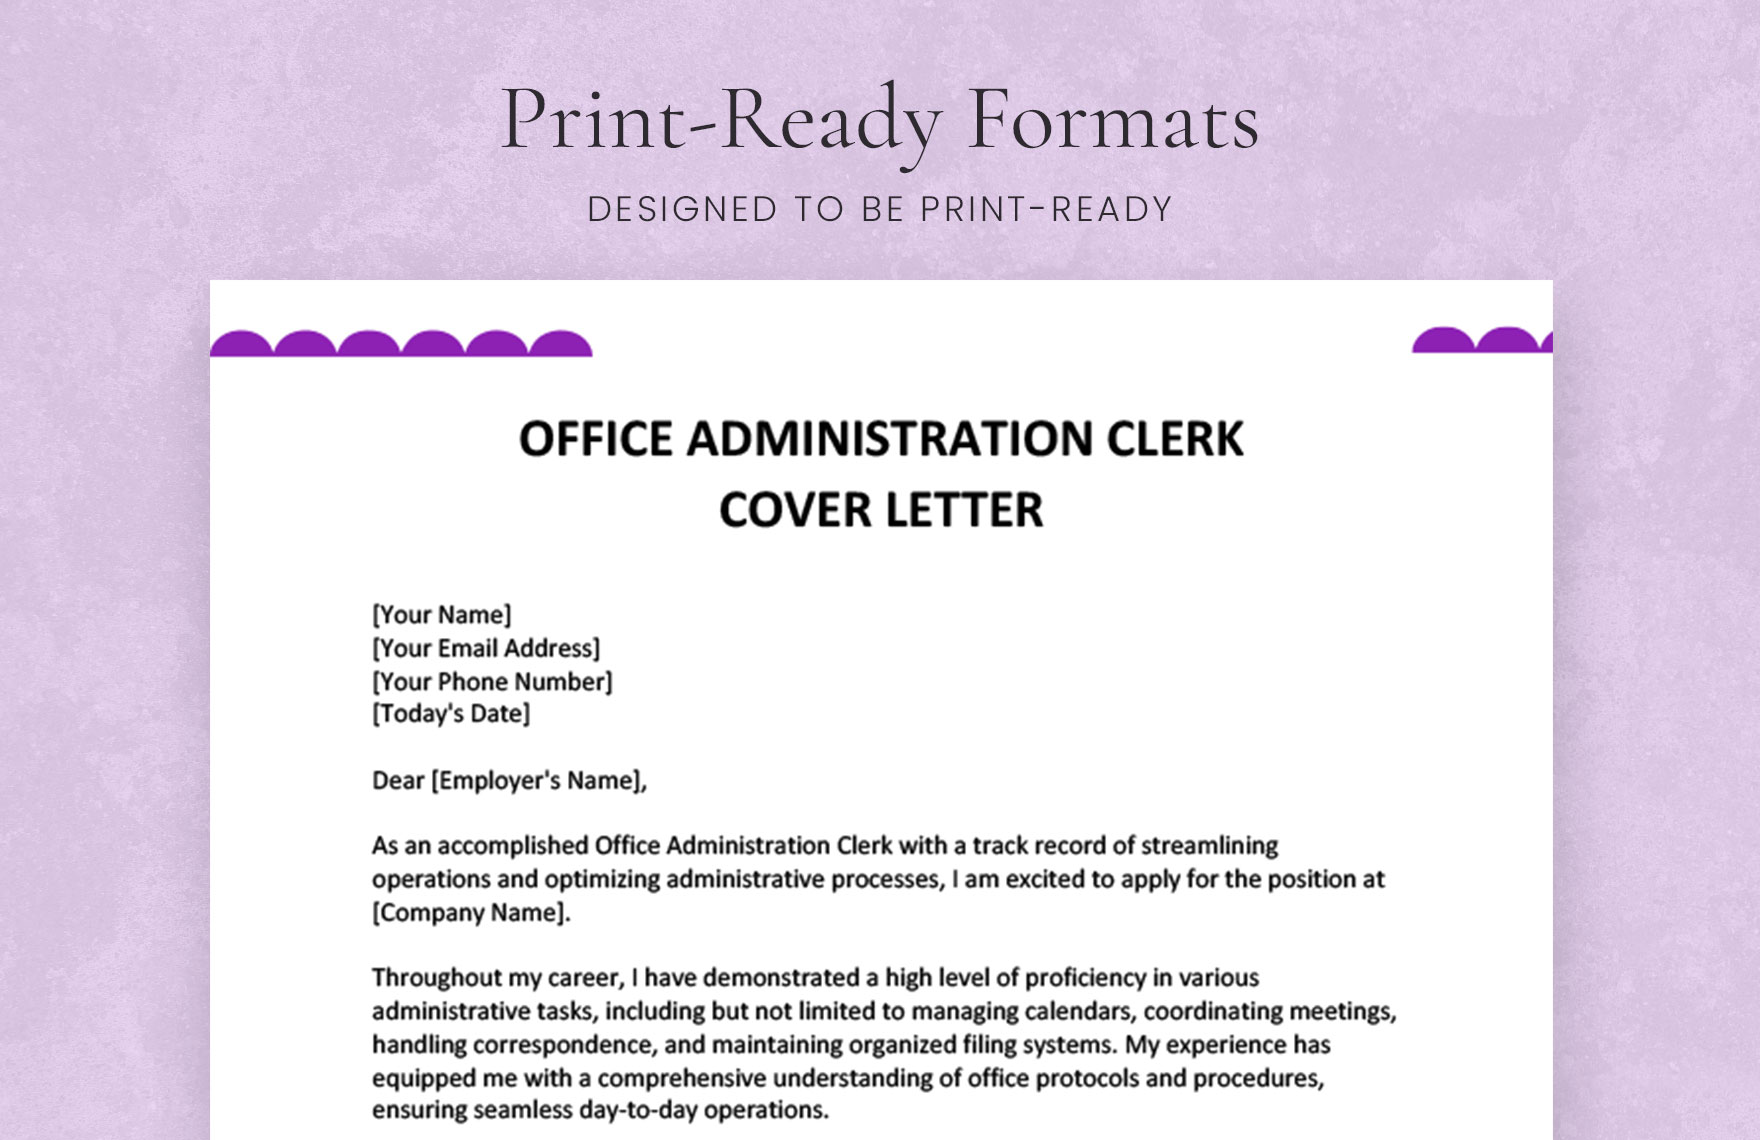 Office Administration Clerk Cover Letter